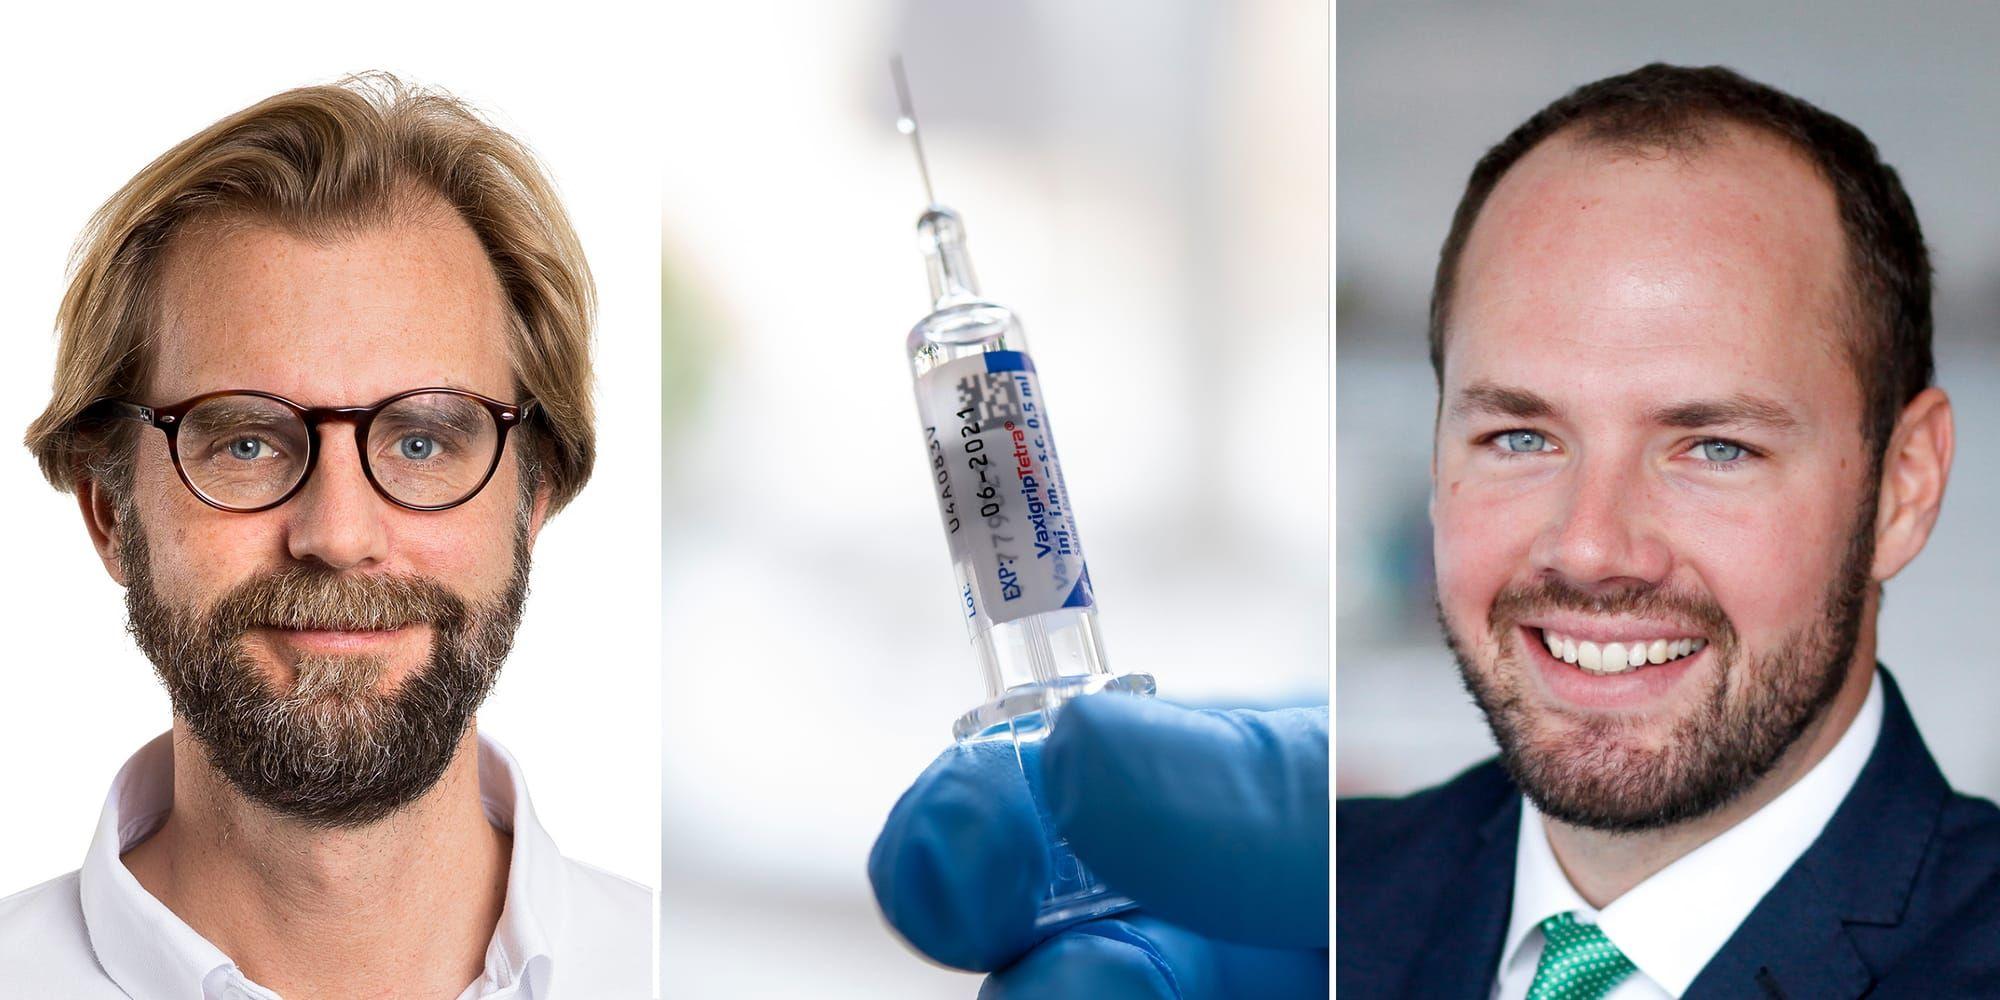 Att under en och samma säsong distribuera ett vaccin till miljontals svenskar, som förmodligen måste tas vid två tillfällen av var och en, är en utmaning som kräver ambitiöst nytänkande. Sverige kan dra lärdom av testningsfrågan och välja en proaktiv väg den här gången, skriver debattörerna.